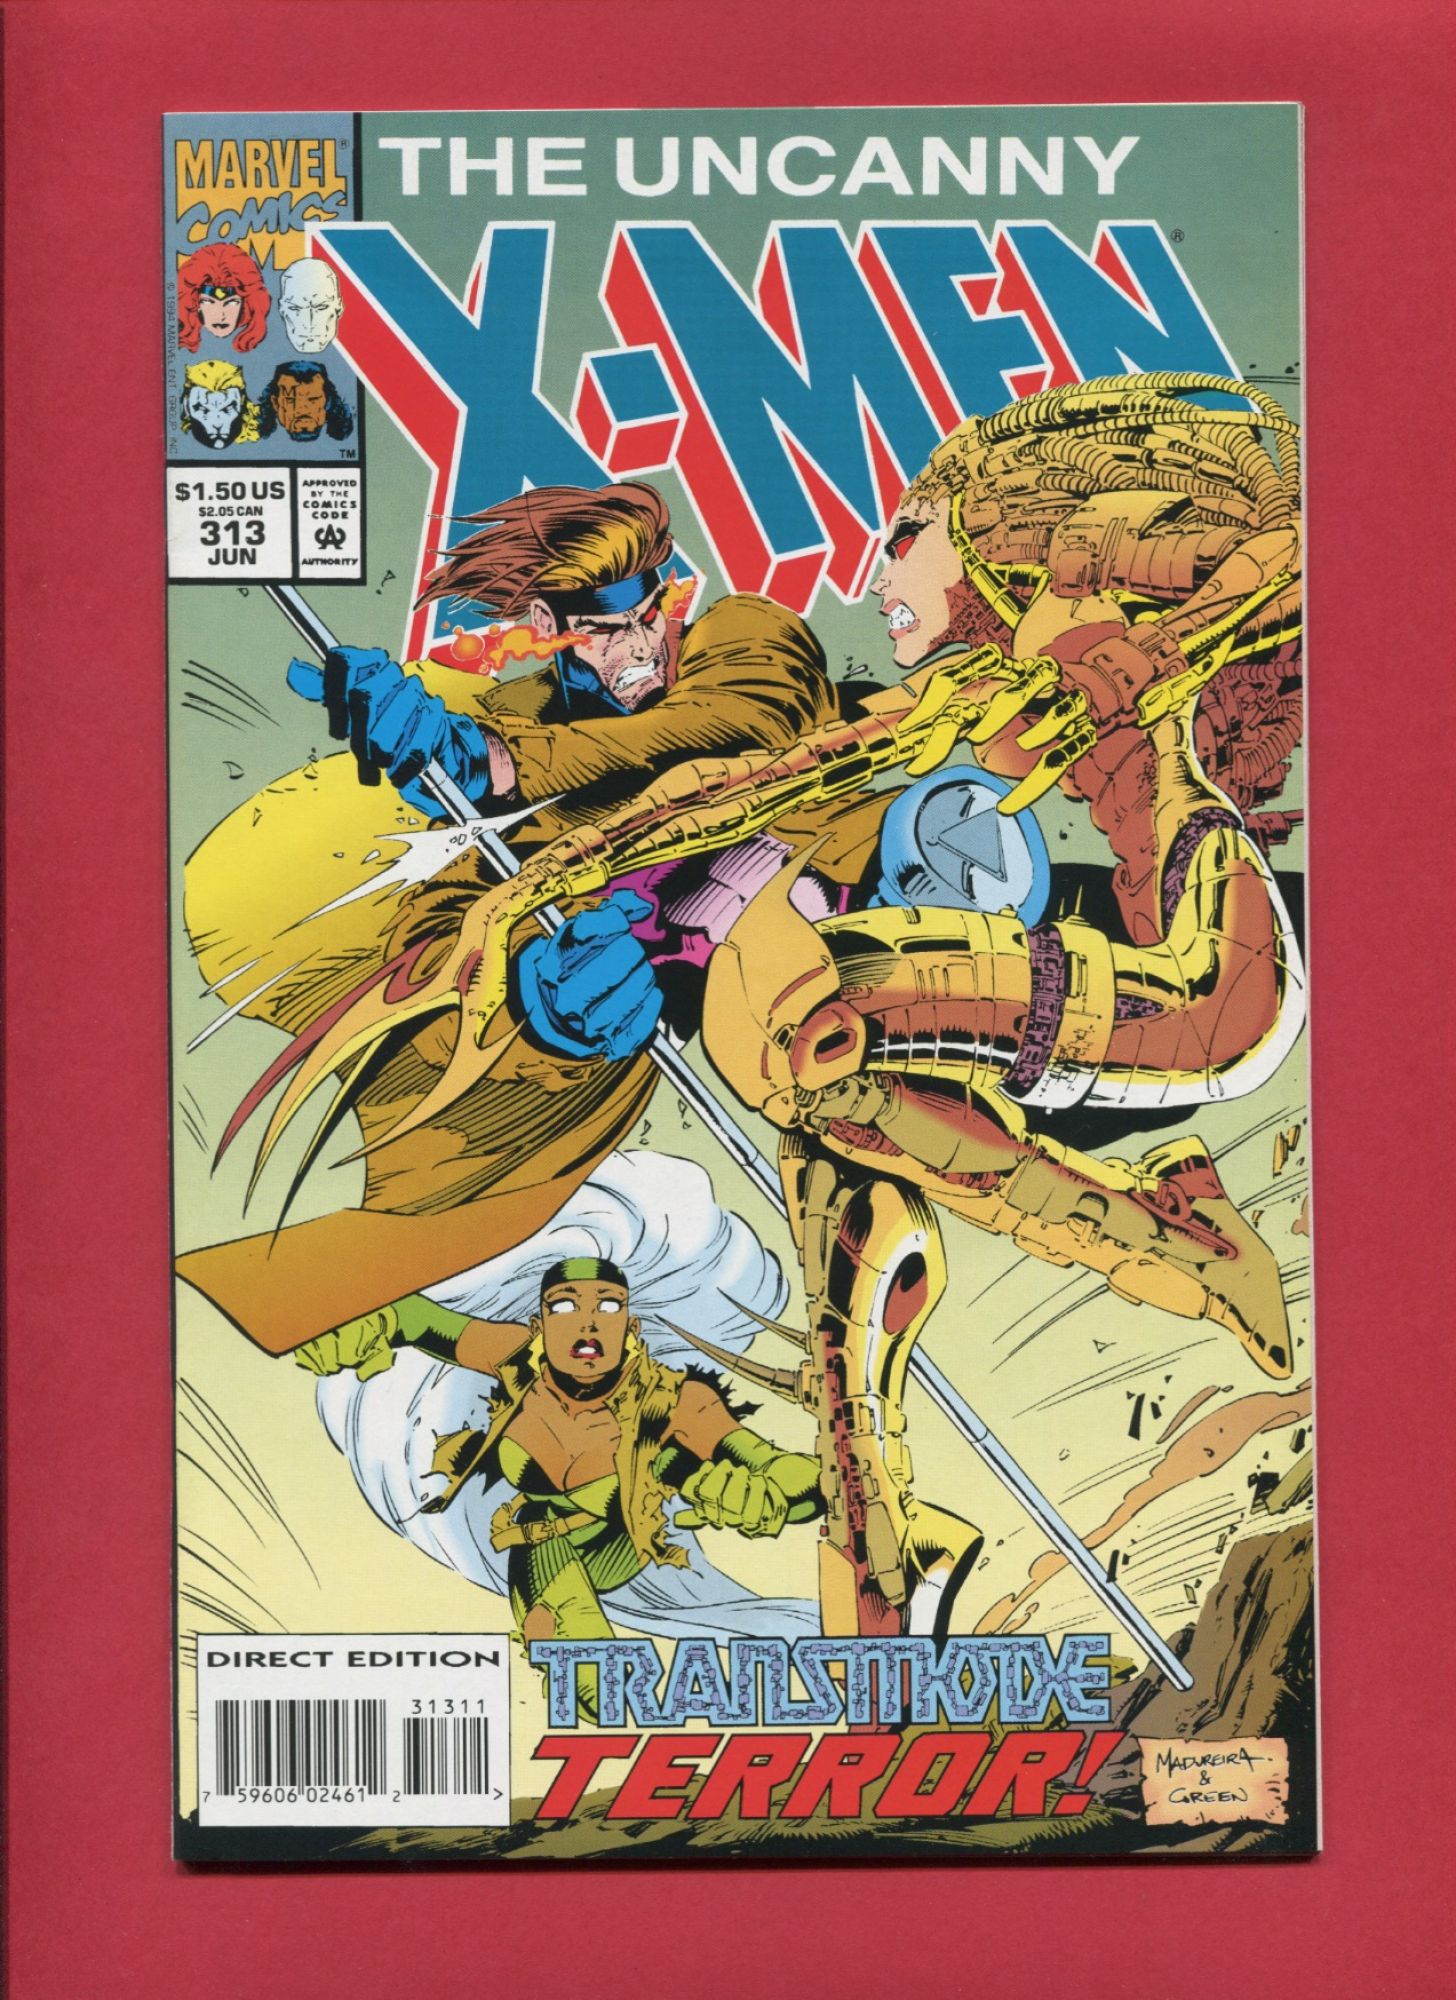 Uncanny X-Men #313, Jun 1994, 9.2 NM-